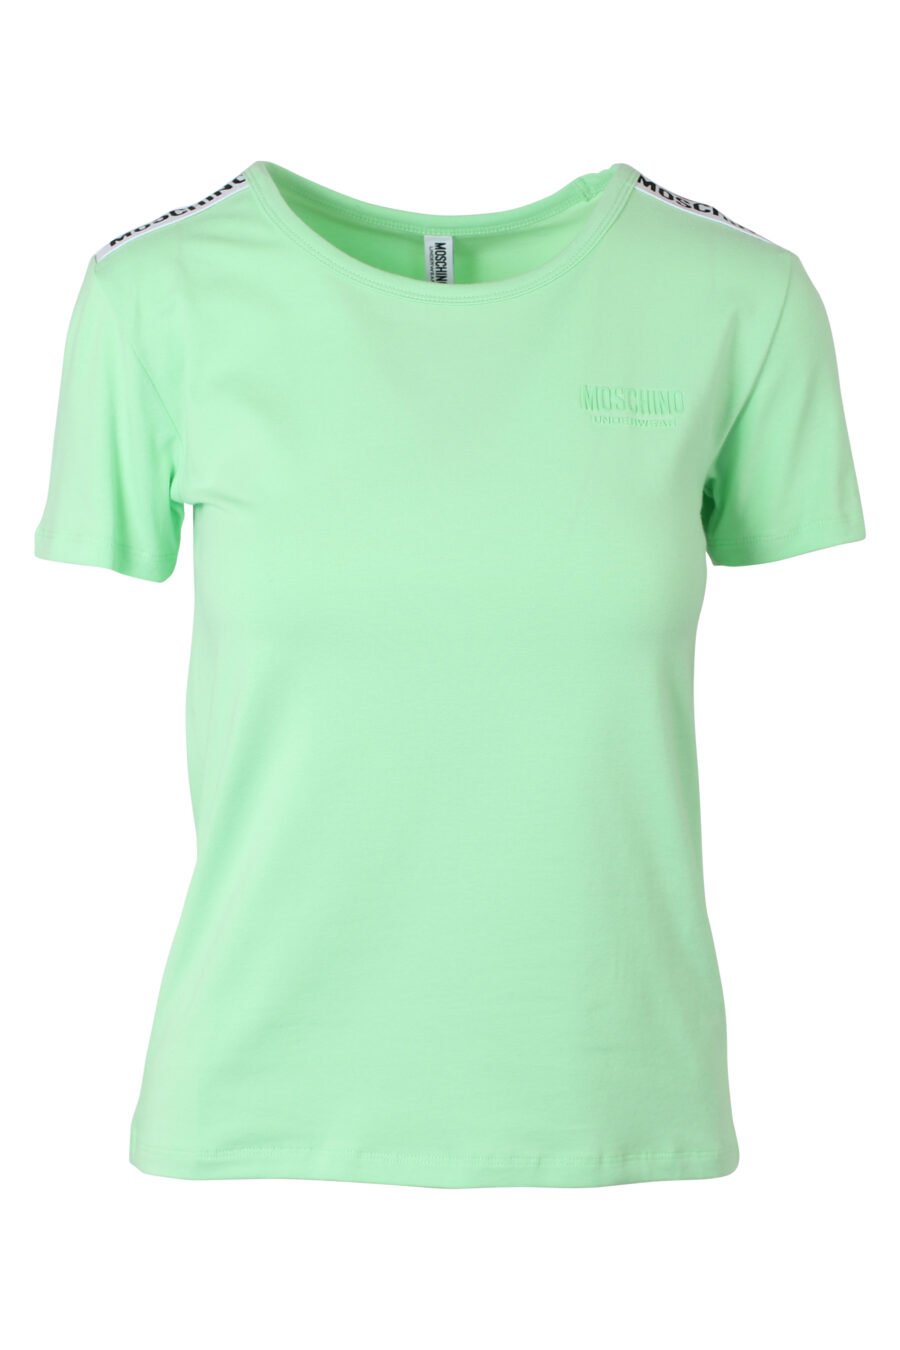 T-shirt verde menta de corte justo com fita com logótipo nos ombros - IMG 9788